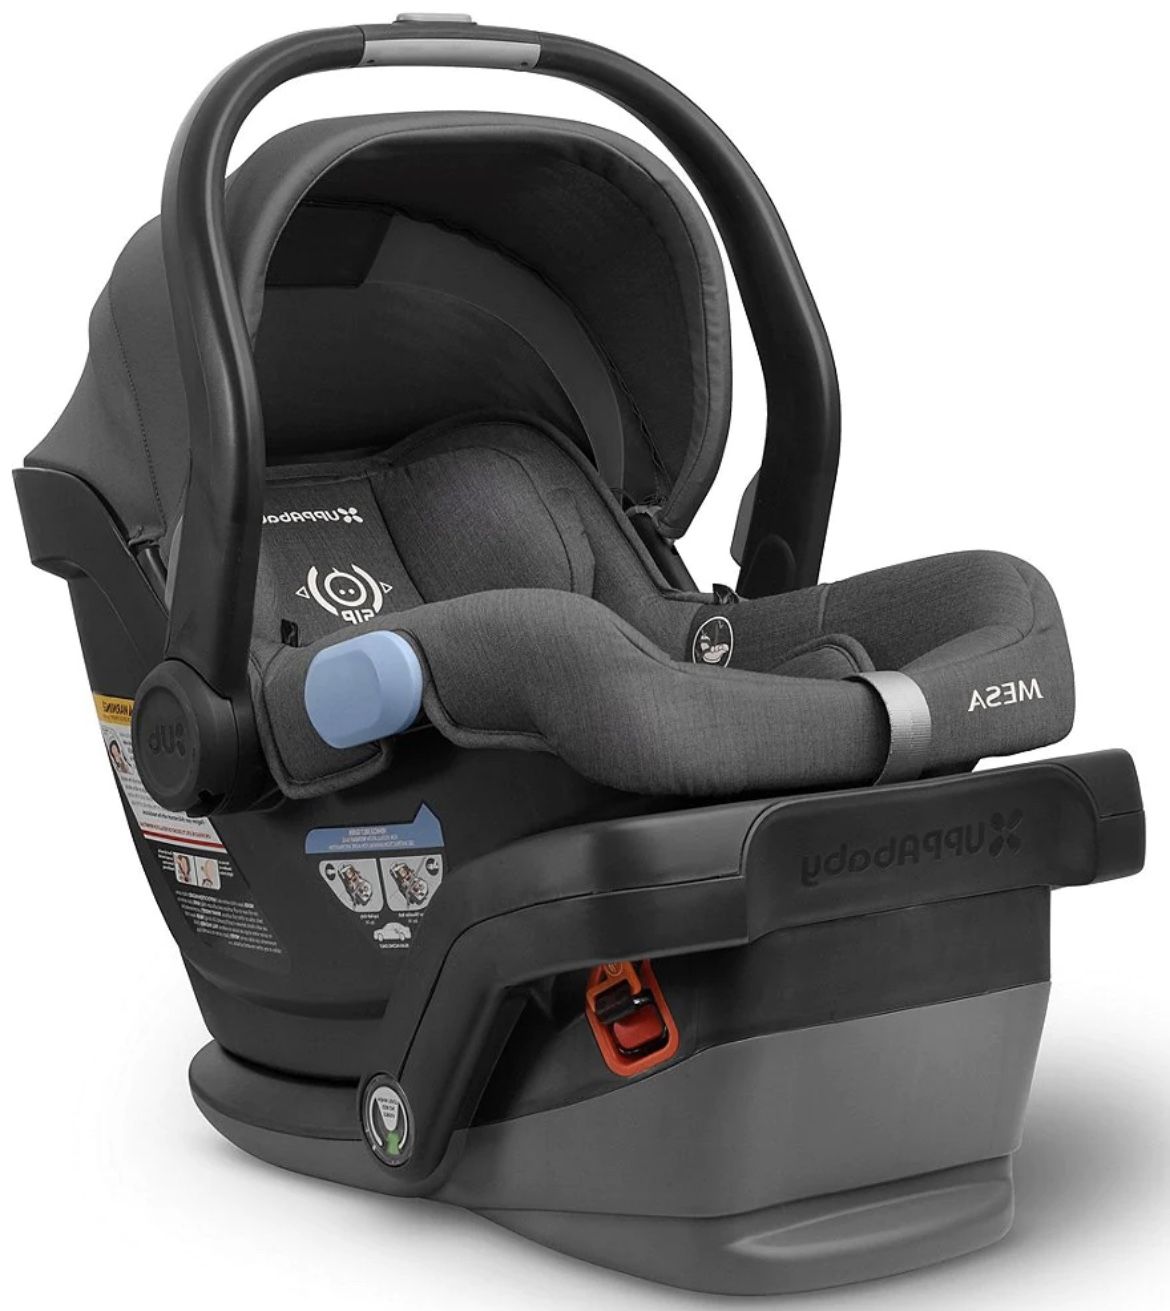 MESA Infant Car Seat